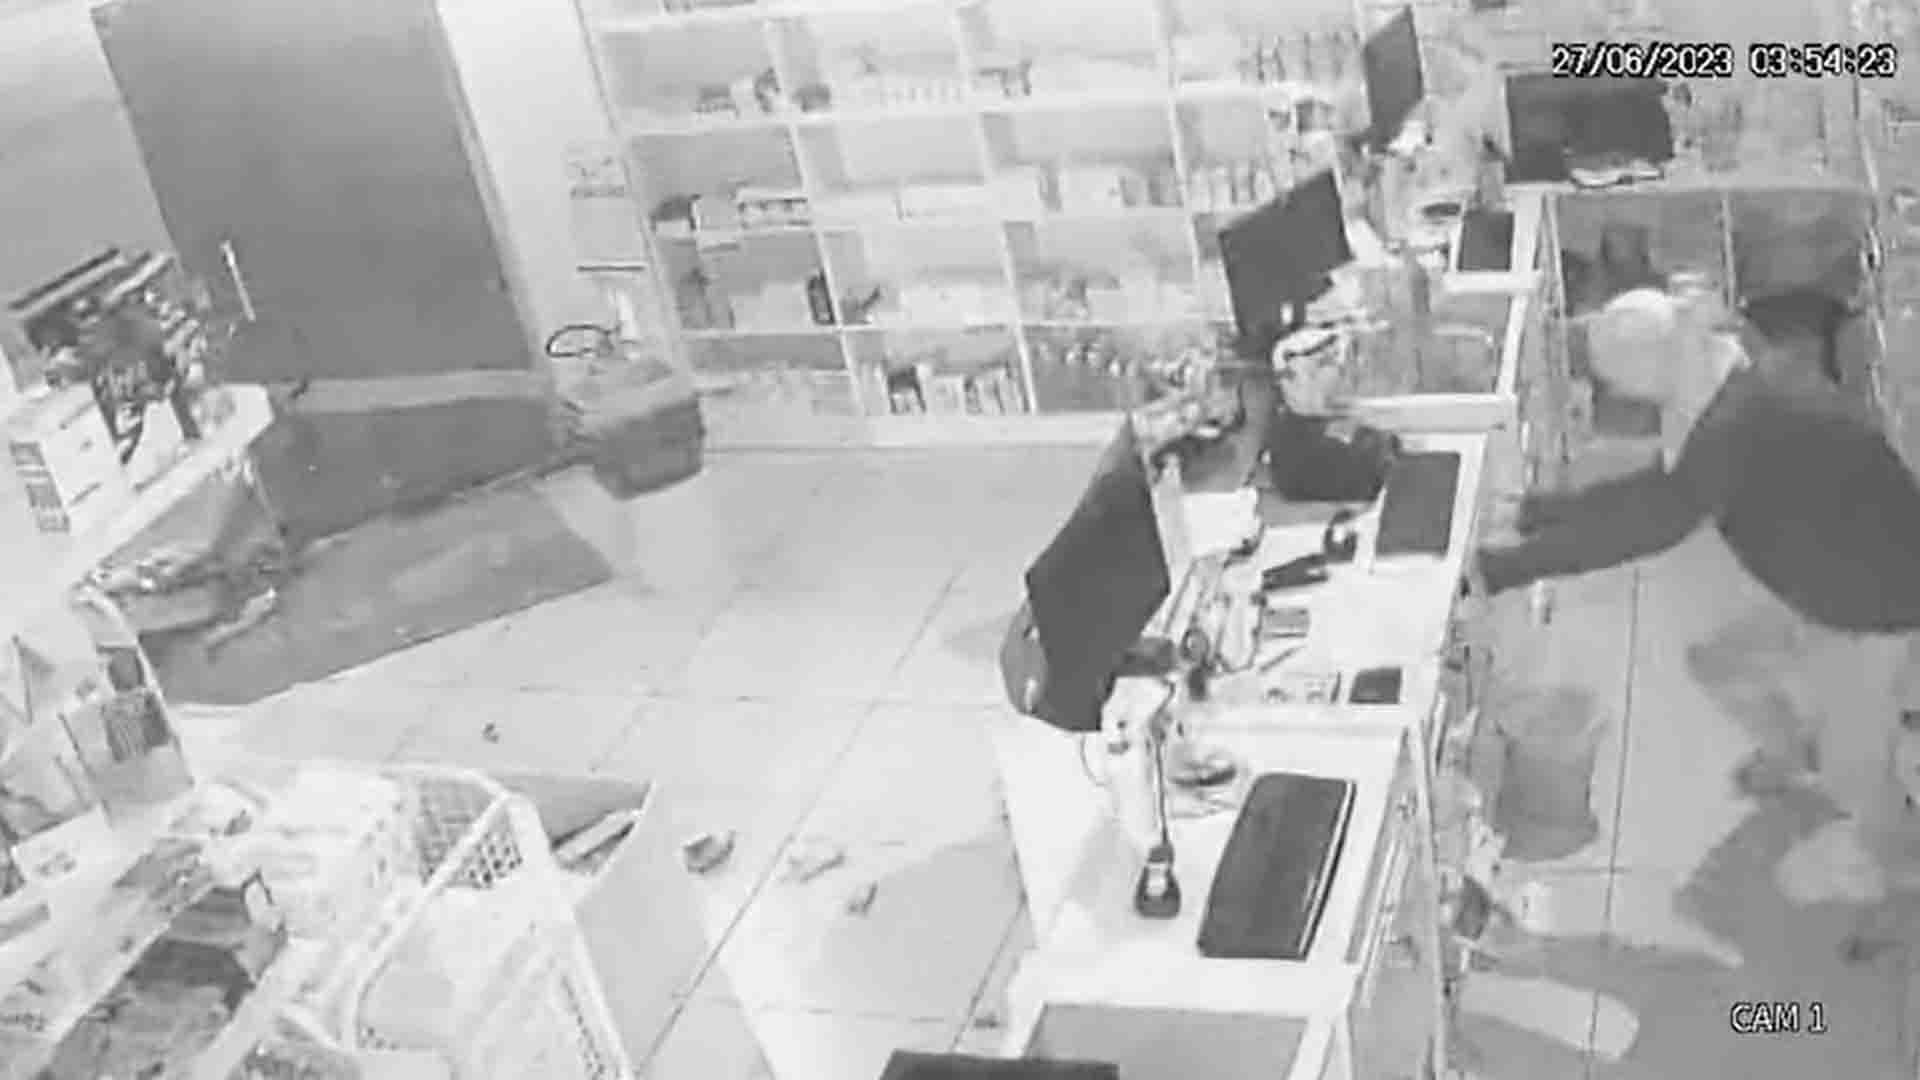 EXCLUSIVO: Câmeras de videomonitoramento registram arrombamento de farmácia em Santa Rosa